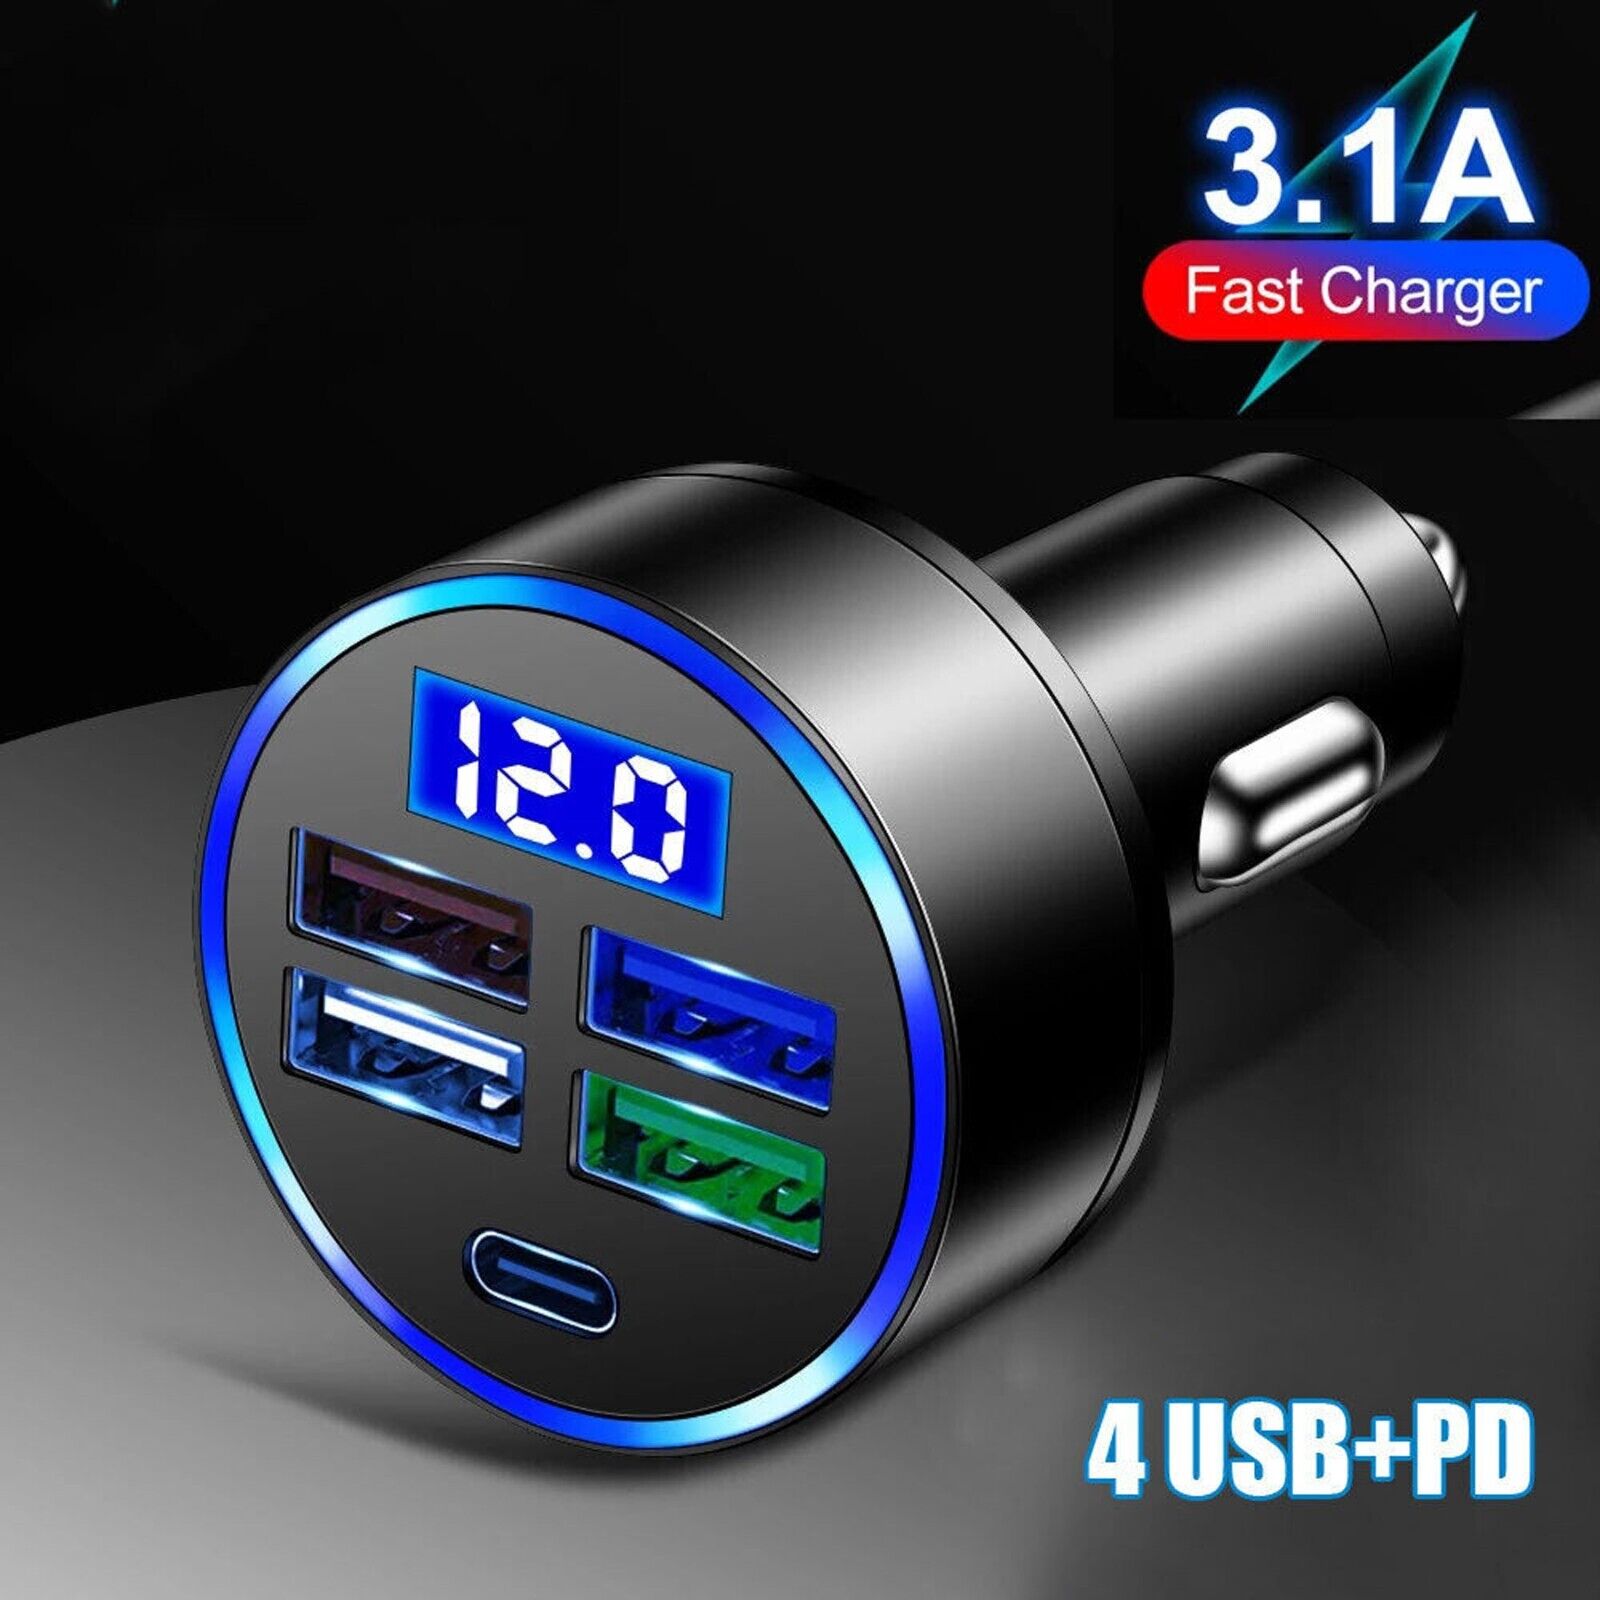 4 USB 12V LED Car Boat Marine Voltmeter Voltage Meter Waterproof Battery Gauge